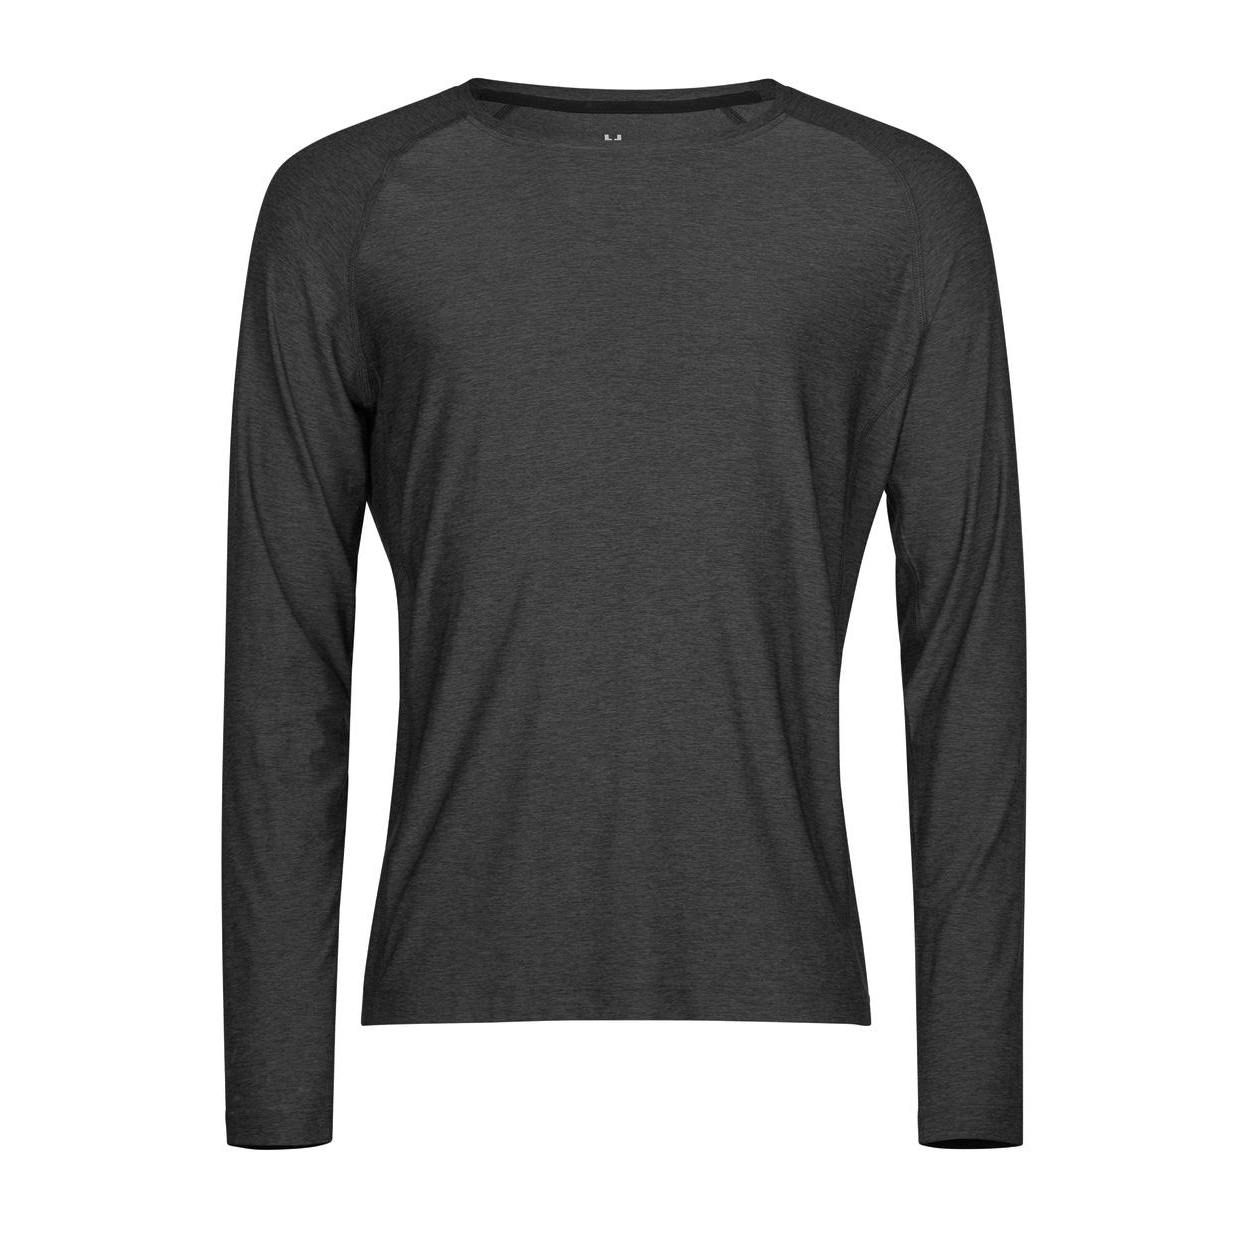 Triko pánské Stedman Tee Jays CoolDry tričko s dlouhými rukávy - tmavě šedé, XXL